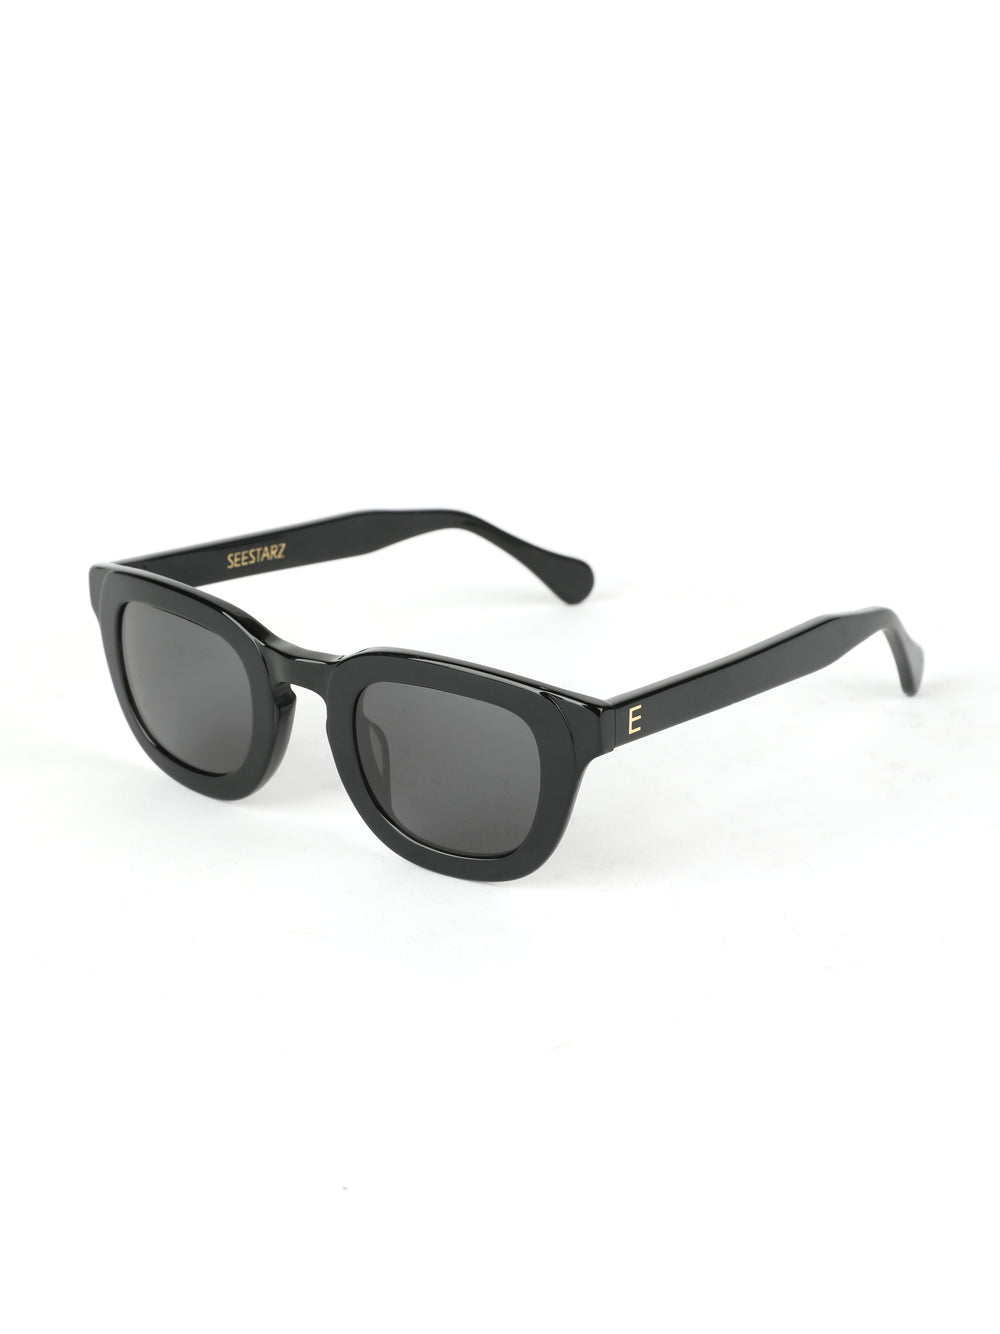 משקפי שמש שחורות No.4 Black Sunglasses